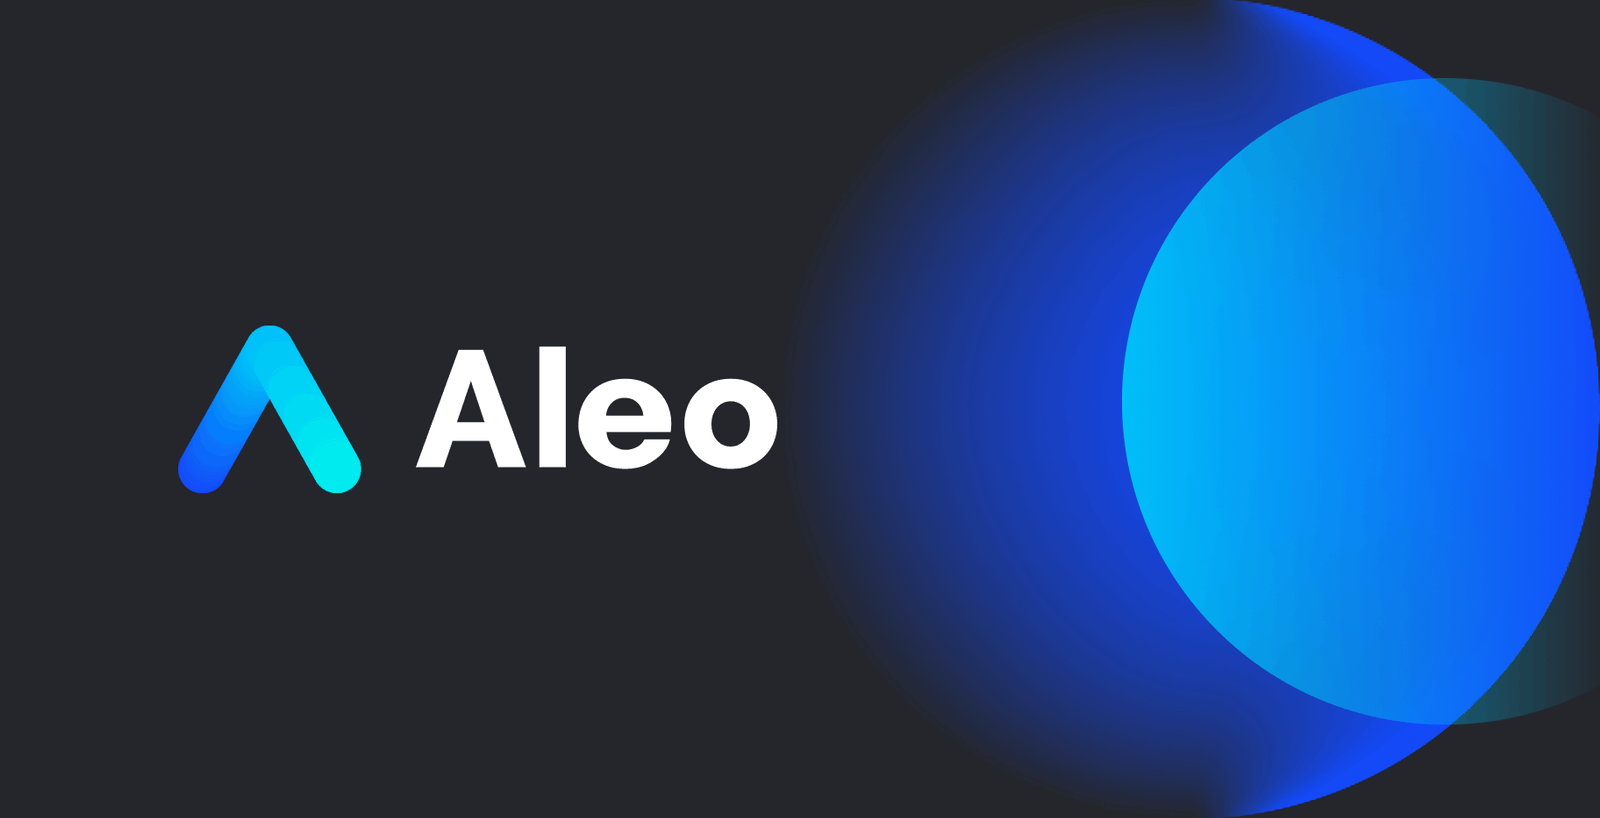 Đội ngũ phát triển dự án Aleo đều là những chuyên gia gạo cội